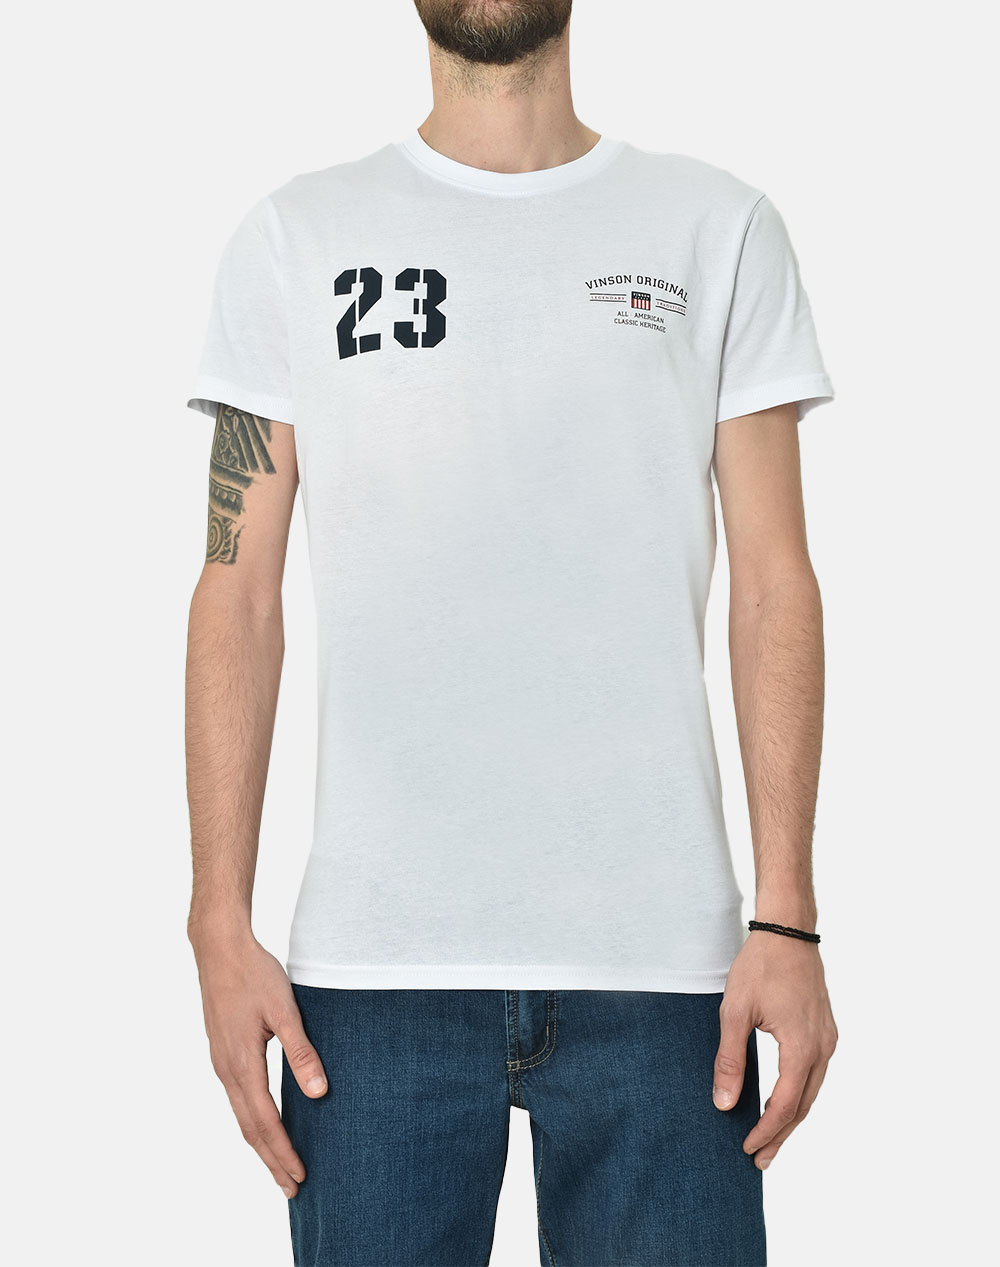 Λευκό t-shirt κοντομάνικο μπλουζάκι λαιμόκοψη VINSON POLO CLUB